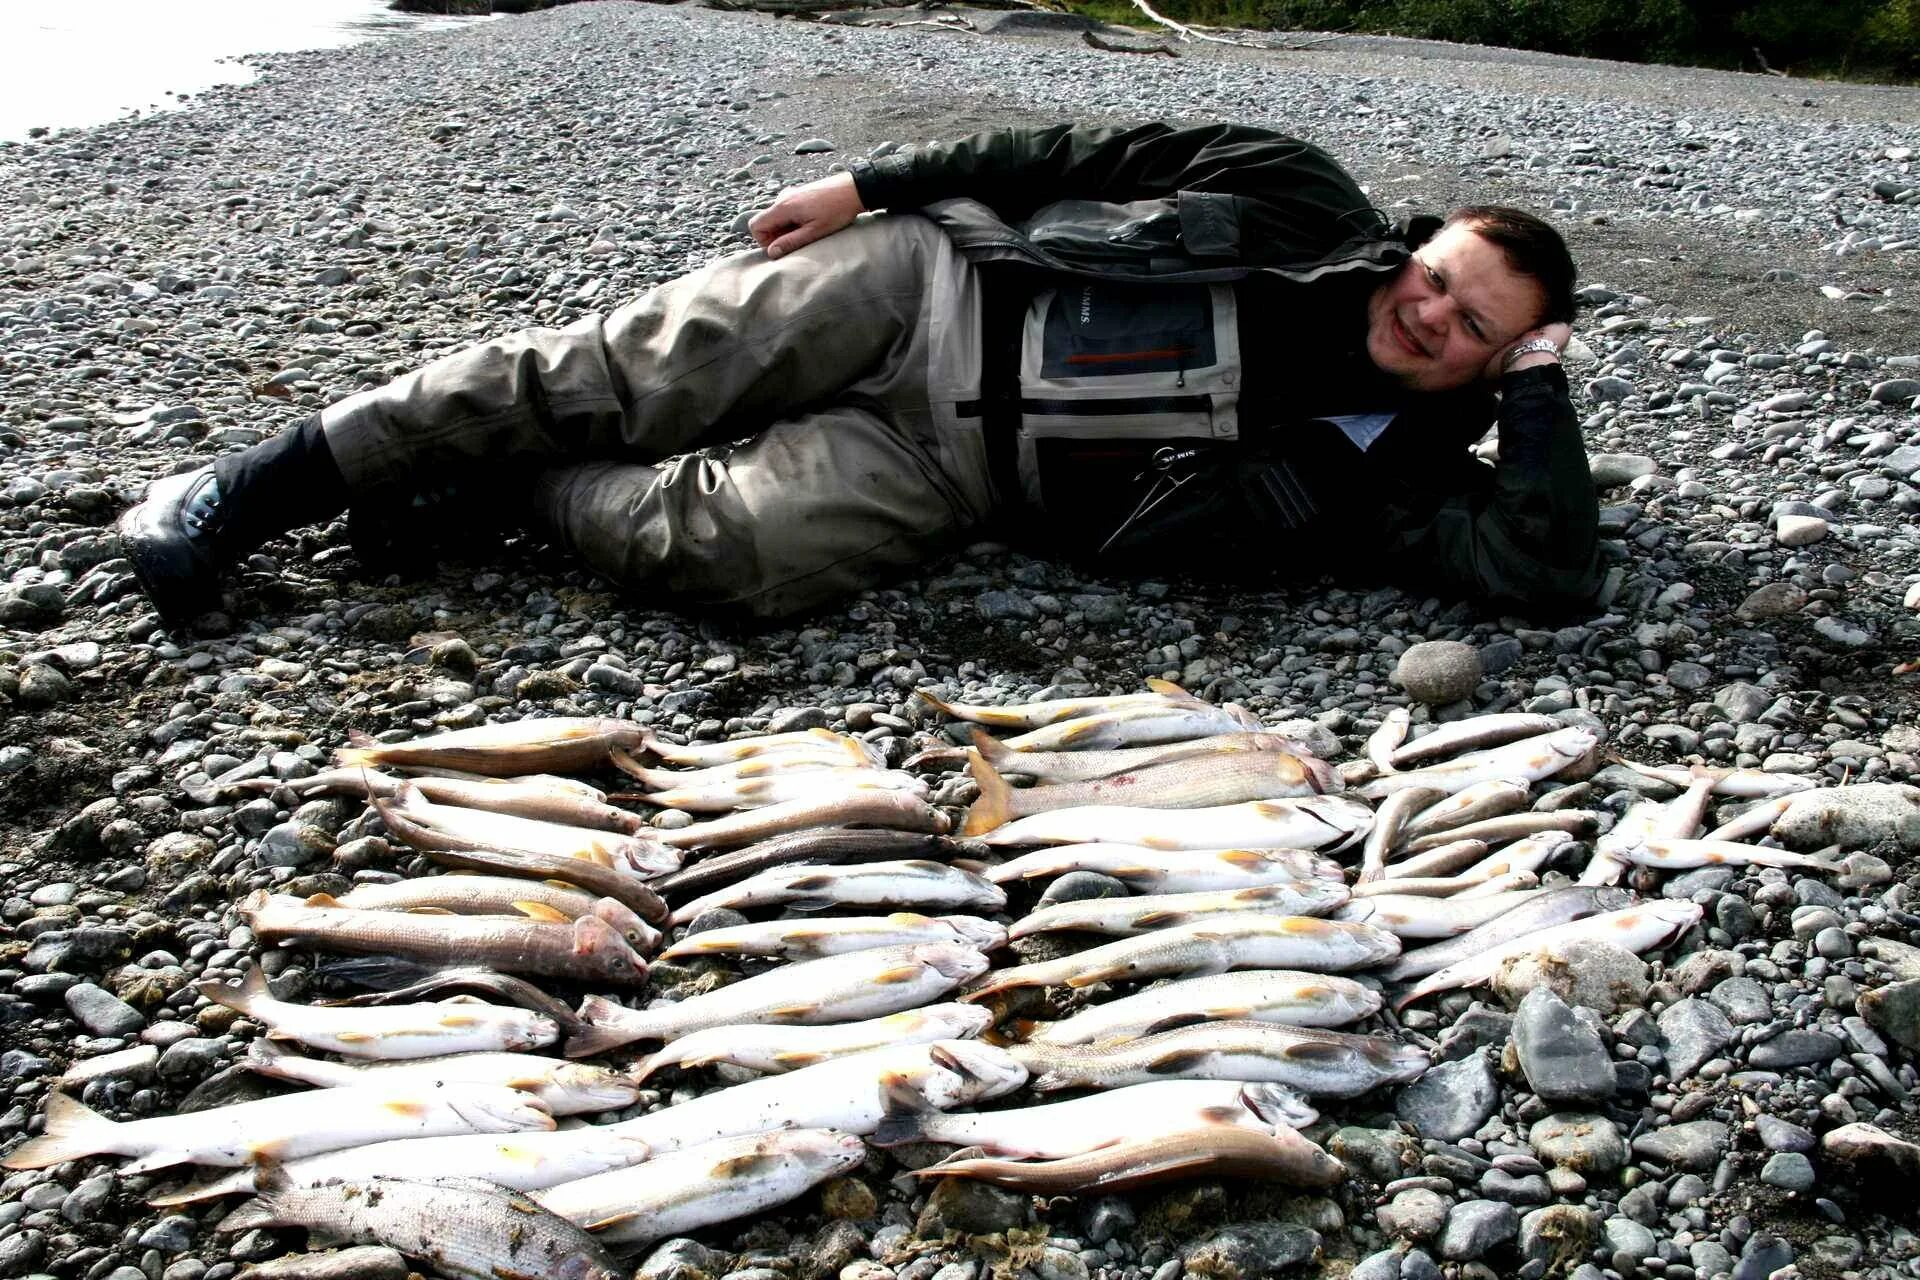 Рыб артель. Петропавловск-Камчатский рыбалка. Рыбалка на Камчатке. Охота и рыболовство. Рыба Камчатки.